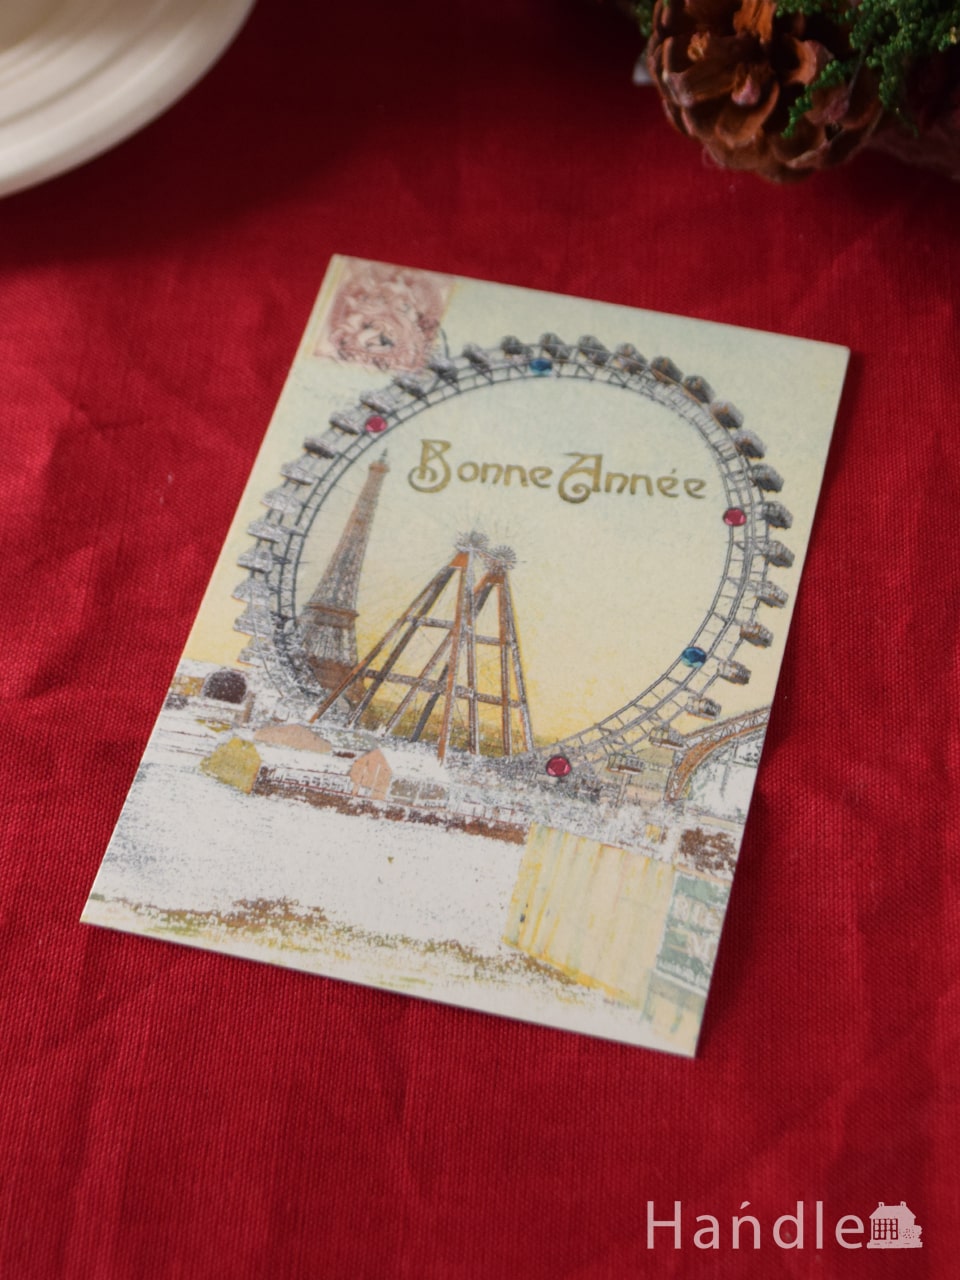 カバリーニ社のクリスマス限定ポストカード（Bonne annee） (cm-203)